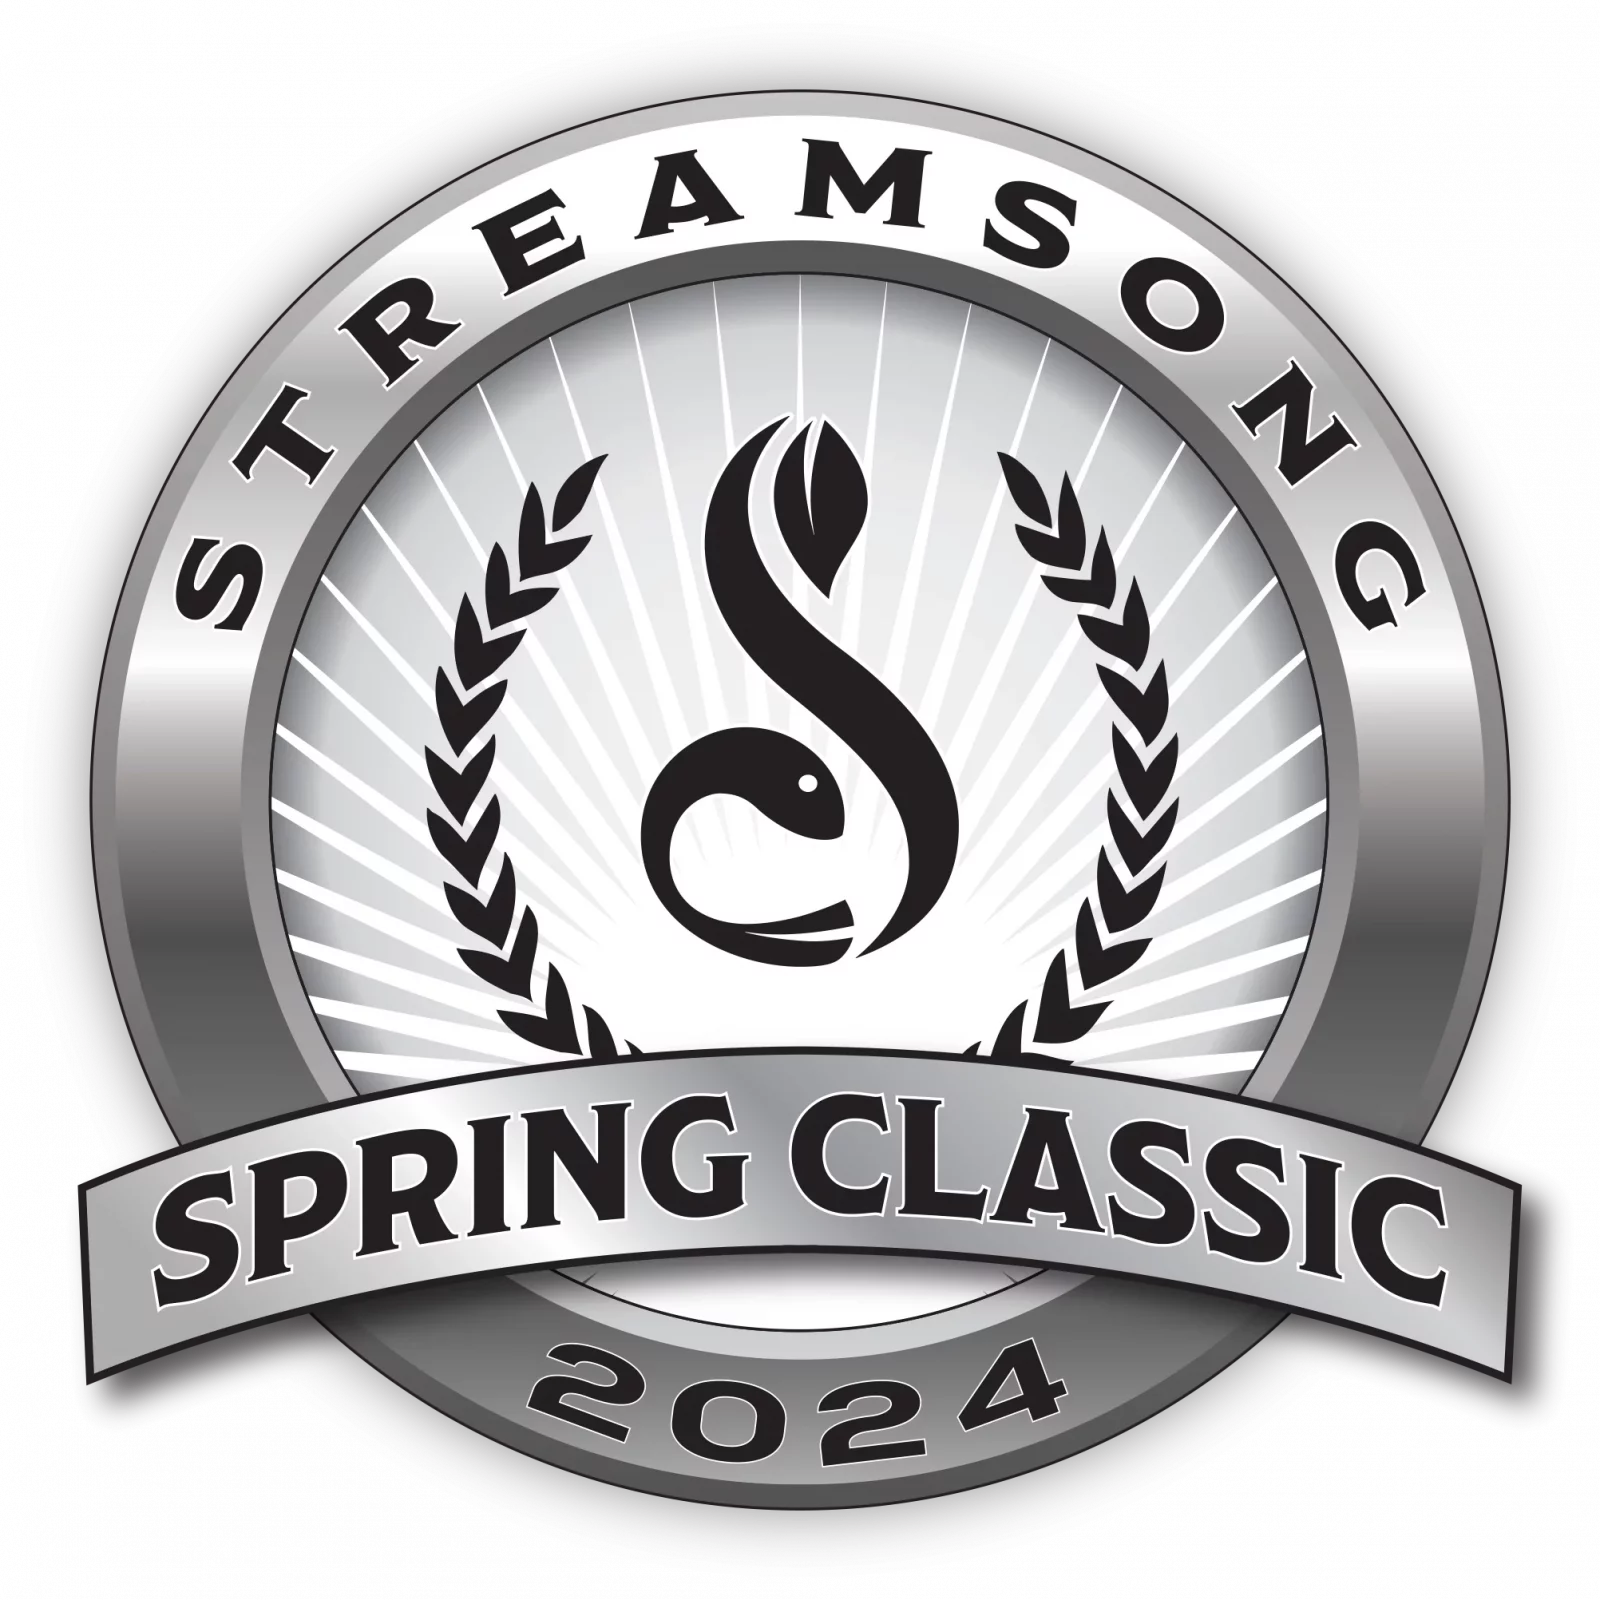 Streamsong Spring Classic Golf Tournament Logo